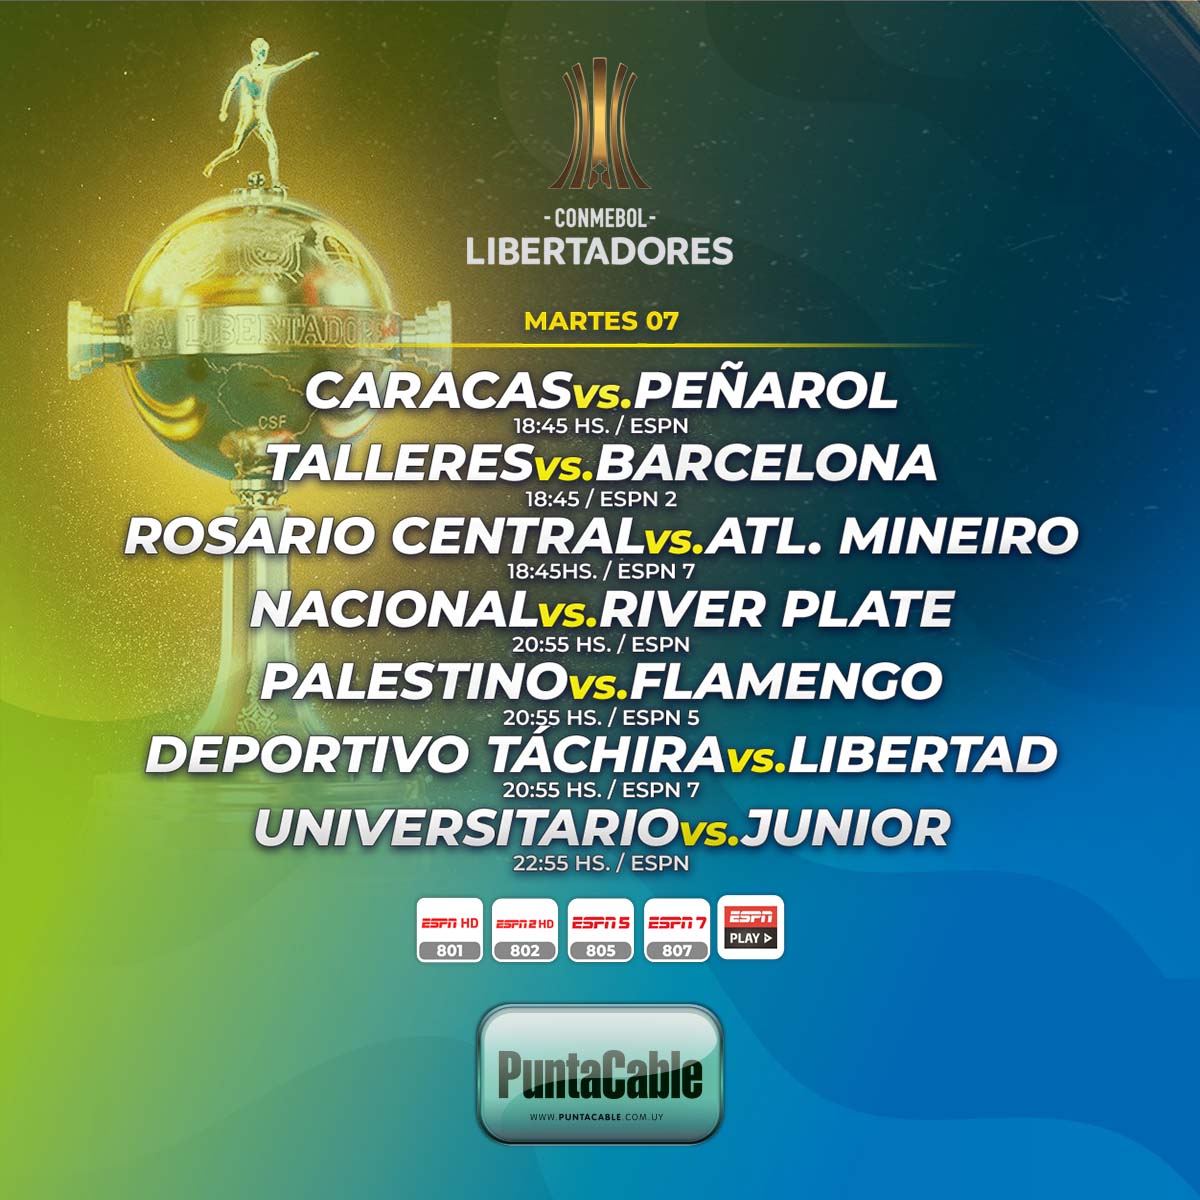 ⚽️¡Hoy martes, se disputan varios encuentros por CONMEBOL LIBERTADORES!
Lo disfrutamos por #PuntaCable a través de #ESPN, #ESPN2, #ESPN5 e #ESPNPlay